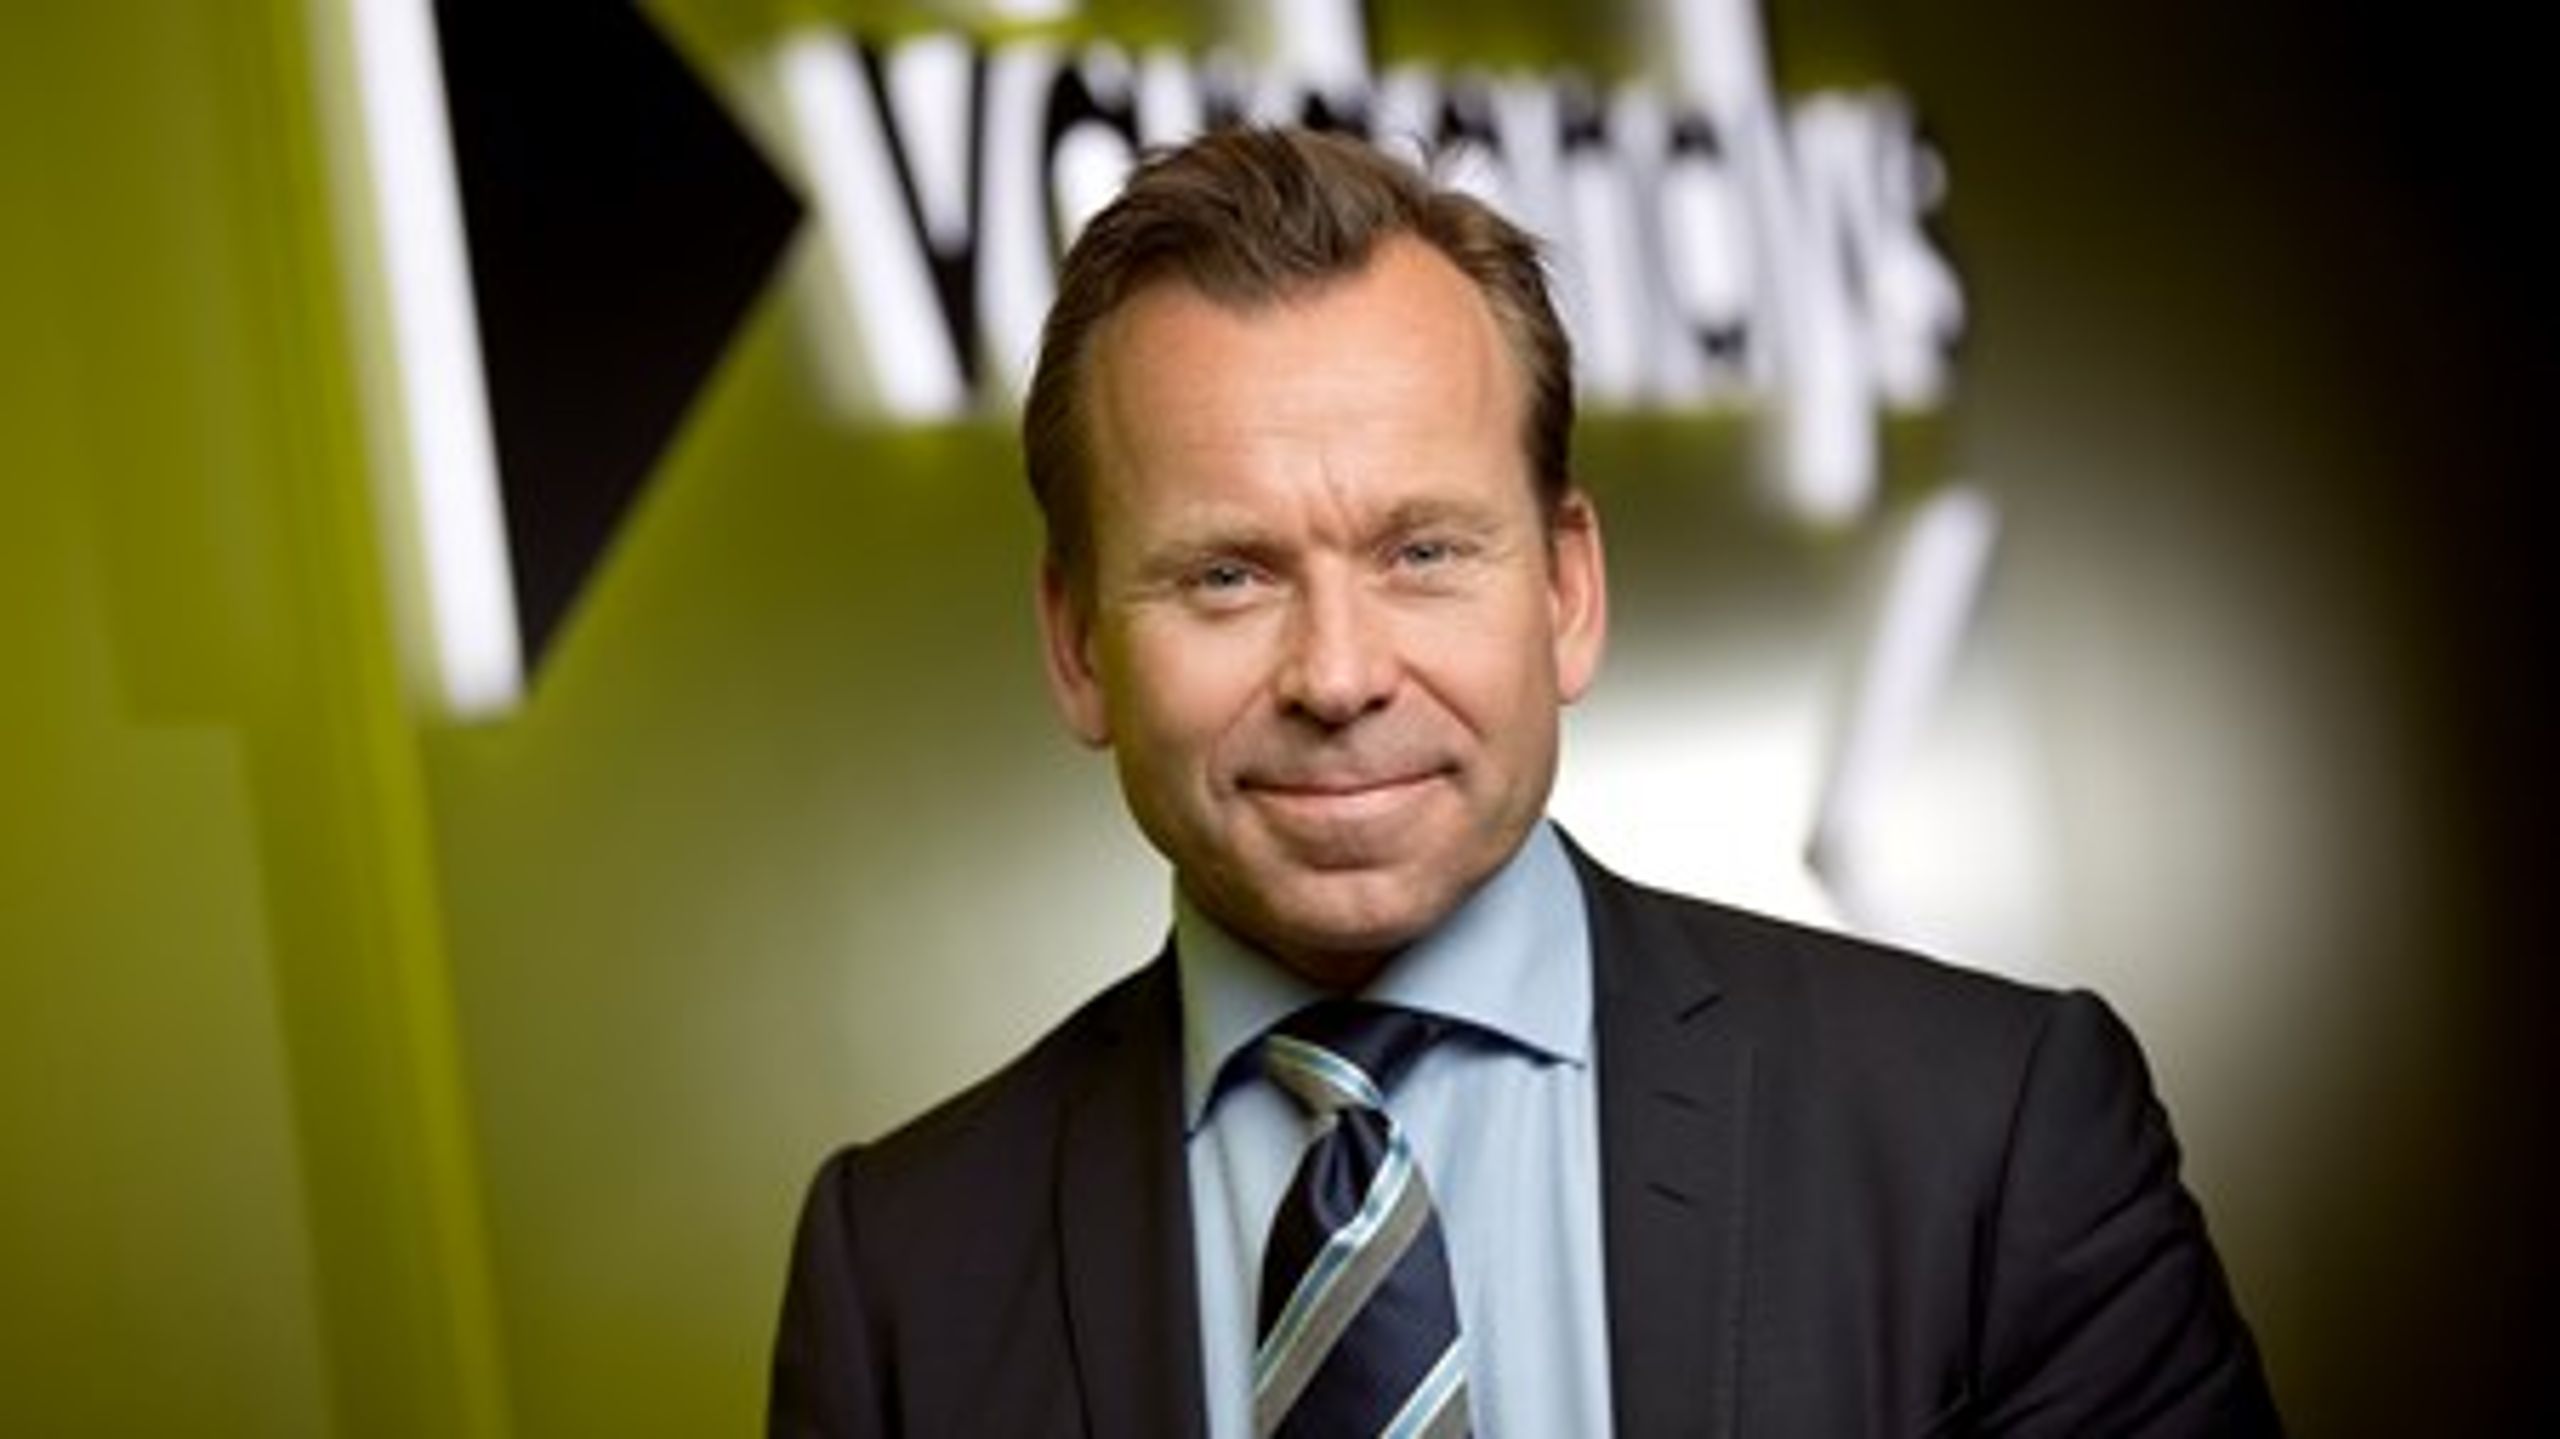 Fredrik Lennartsson är myndighetschef för Myndigheten för vård- och omsorgsanalys som har granskat de två senaste decenniernas statliga psykiatrisatsningar.